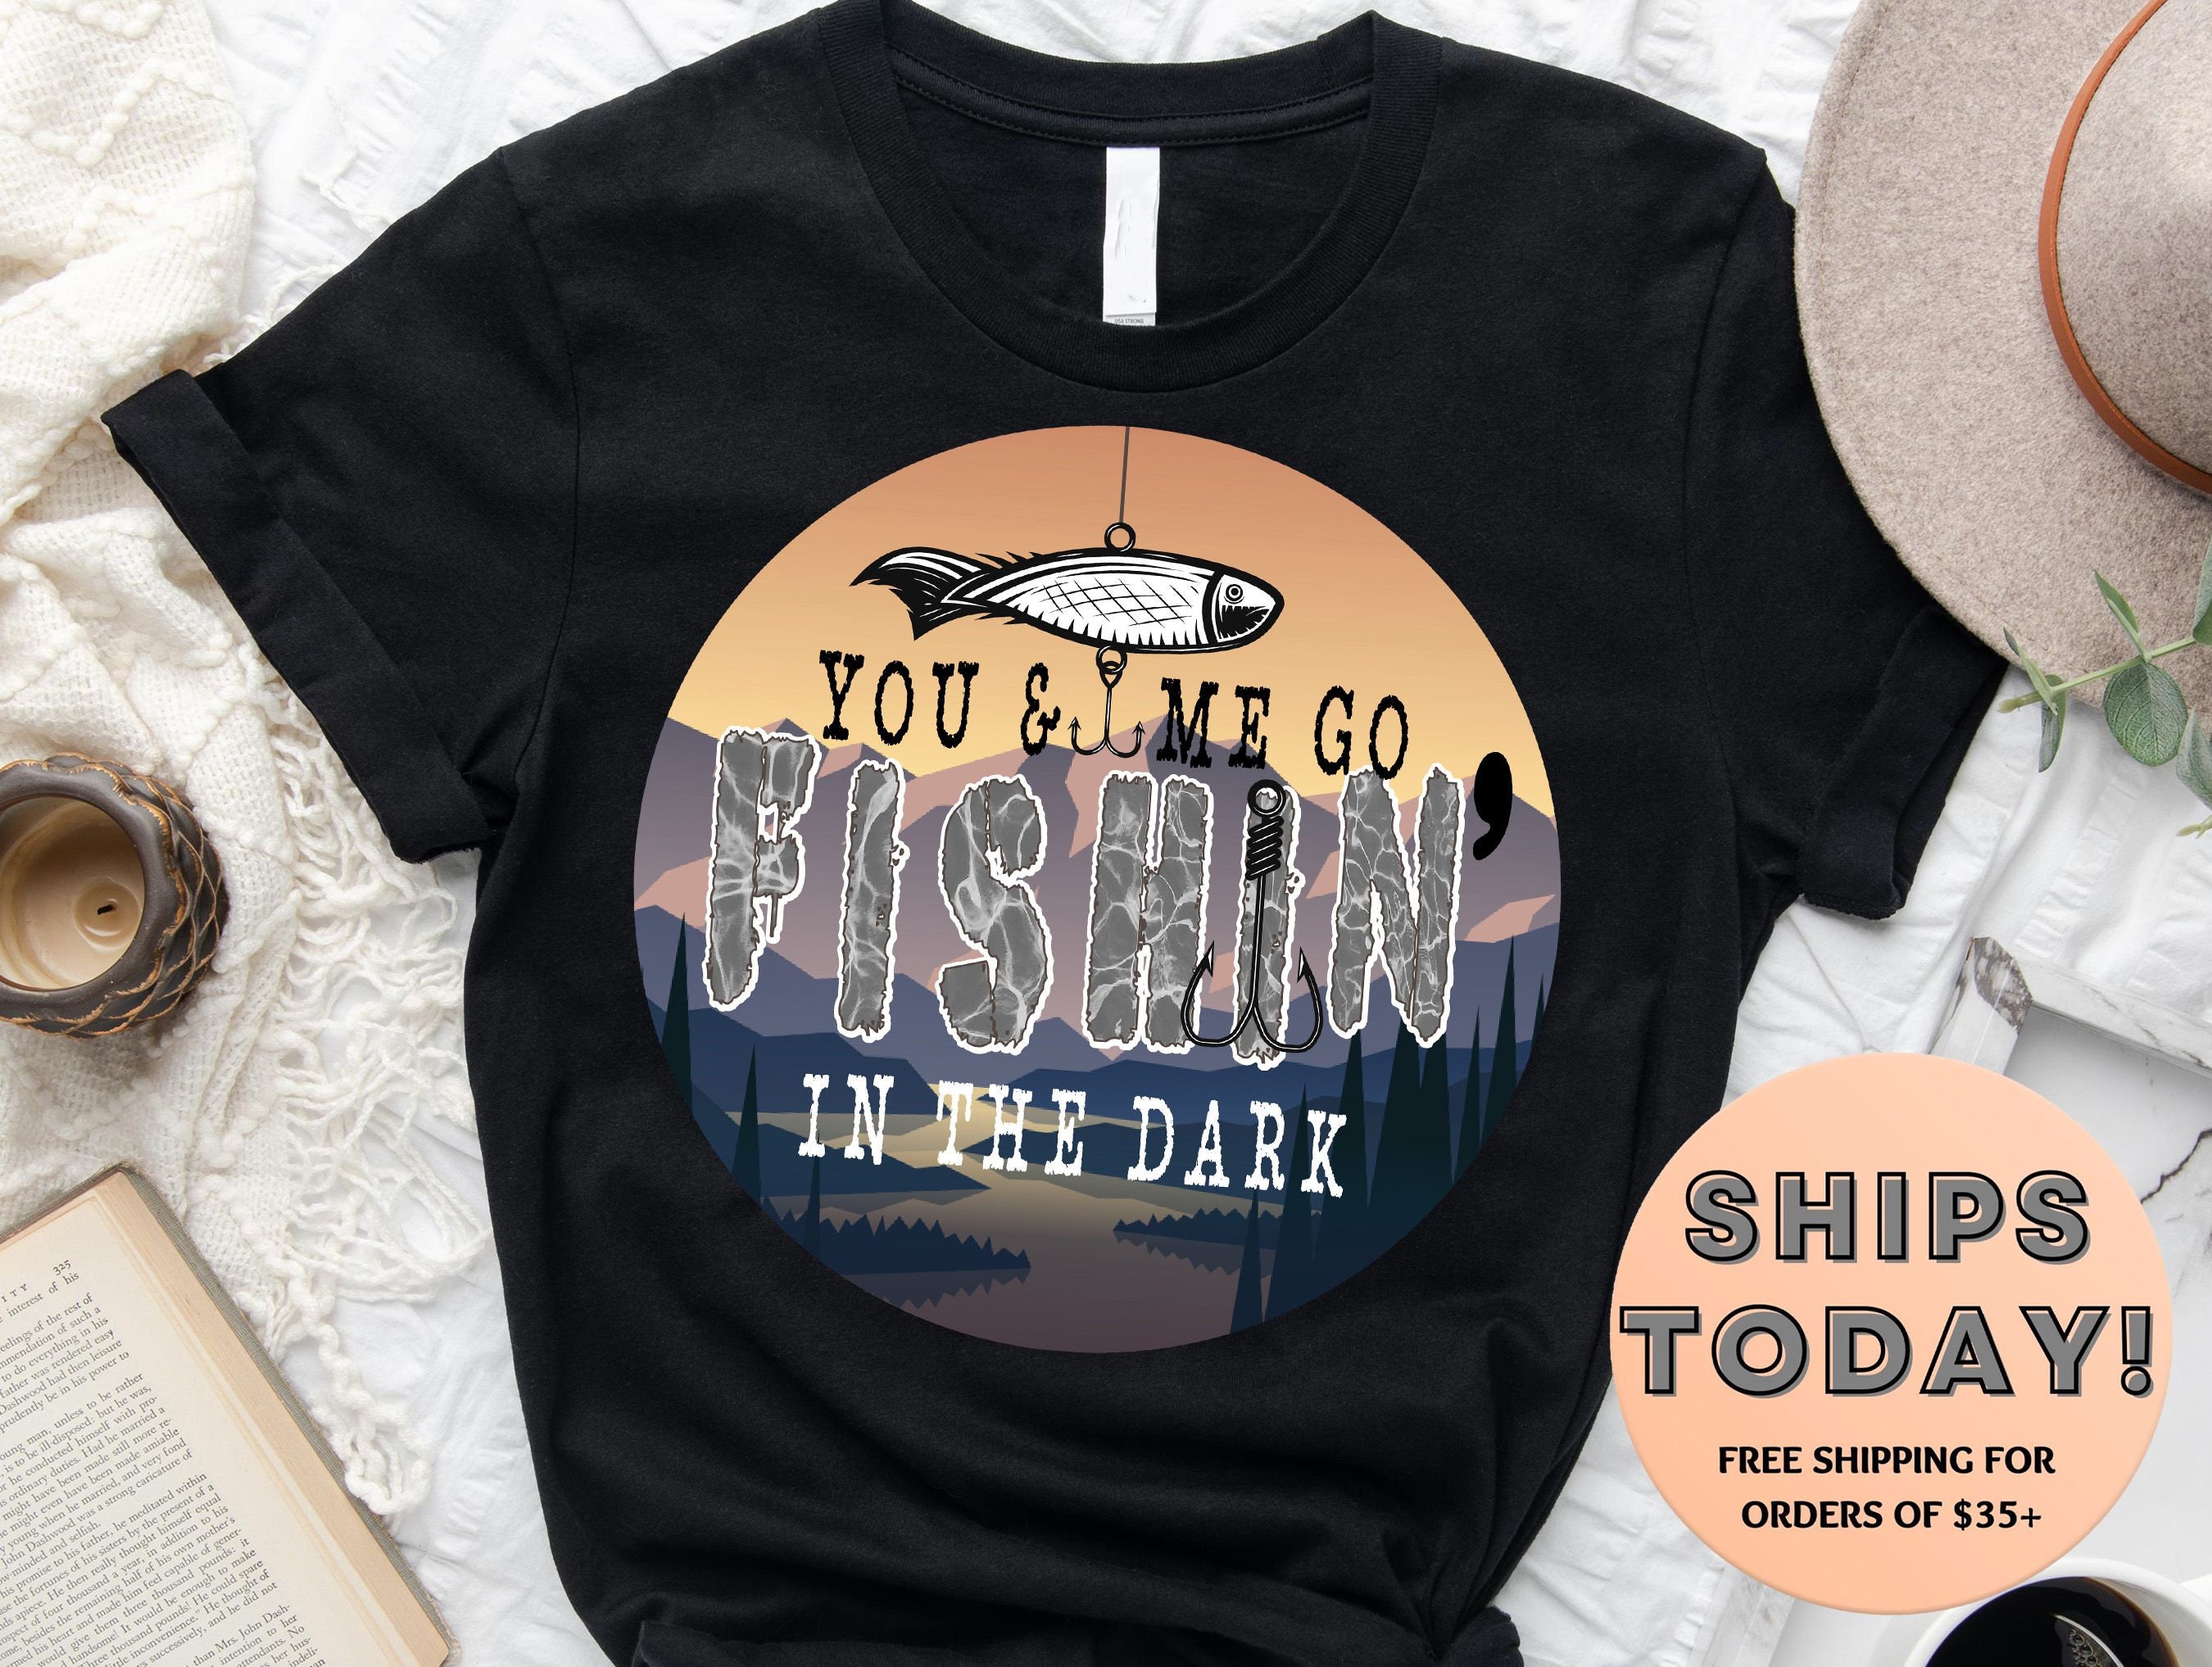 You & Me Fishing in the Dark, Fish Shirt, Men's Fishing Shirt, Funny